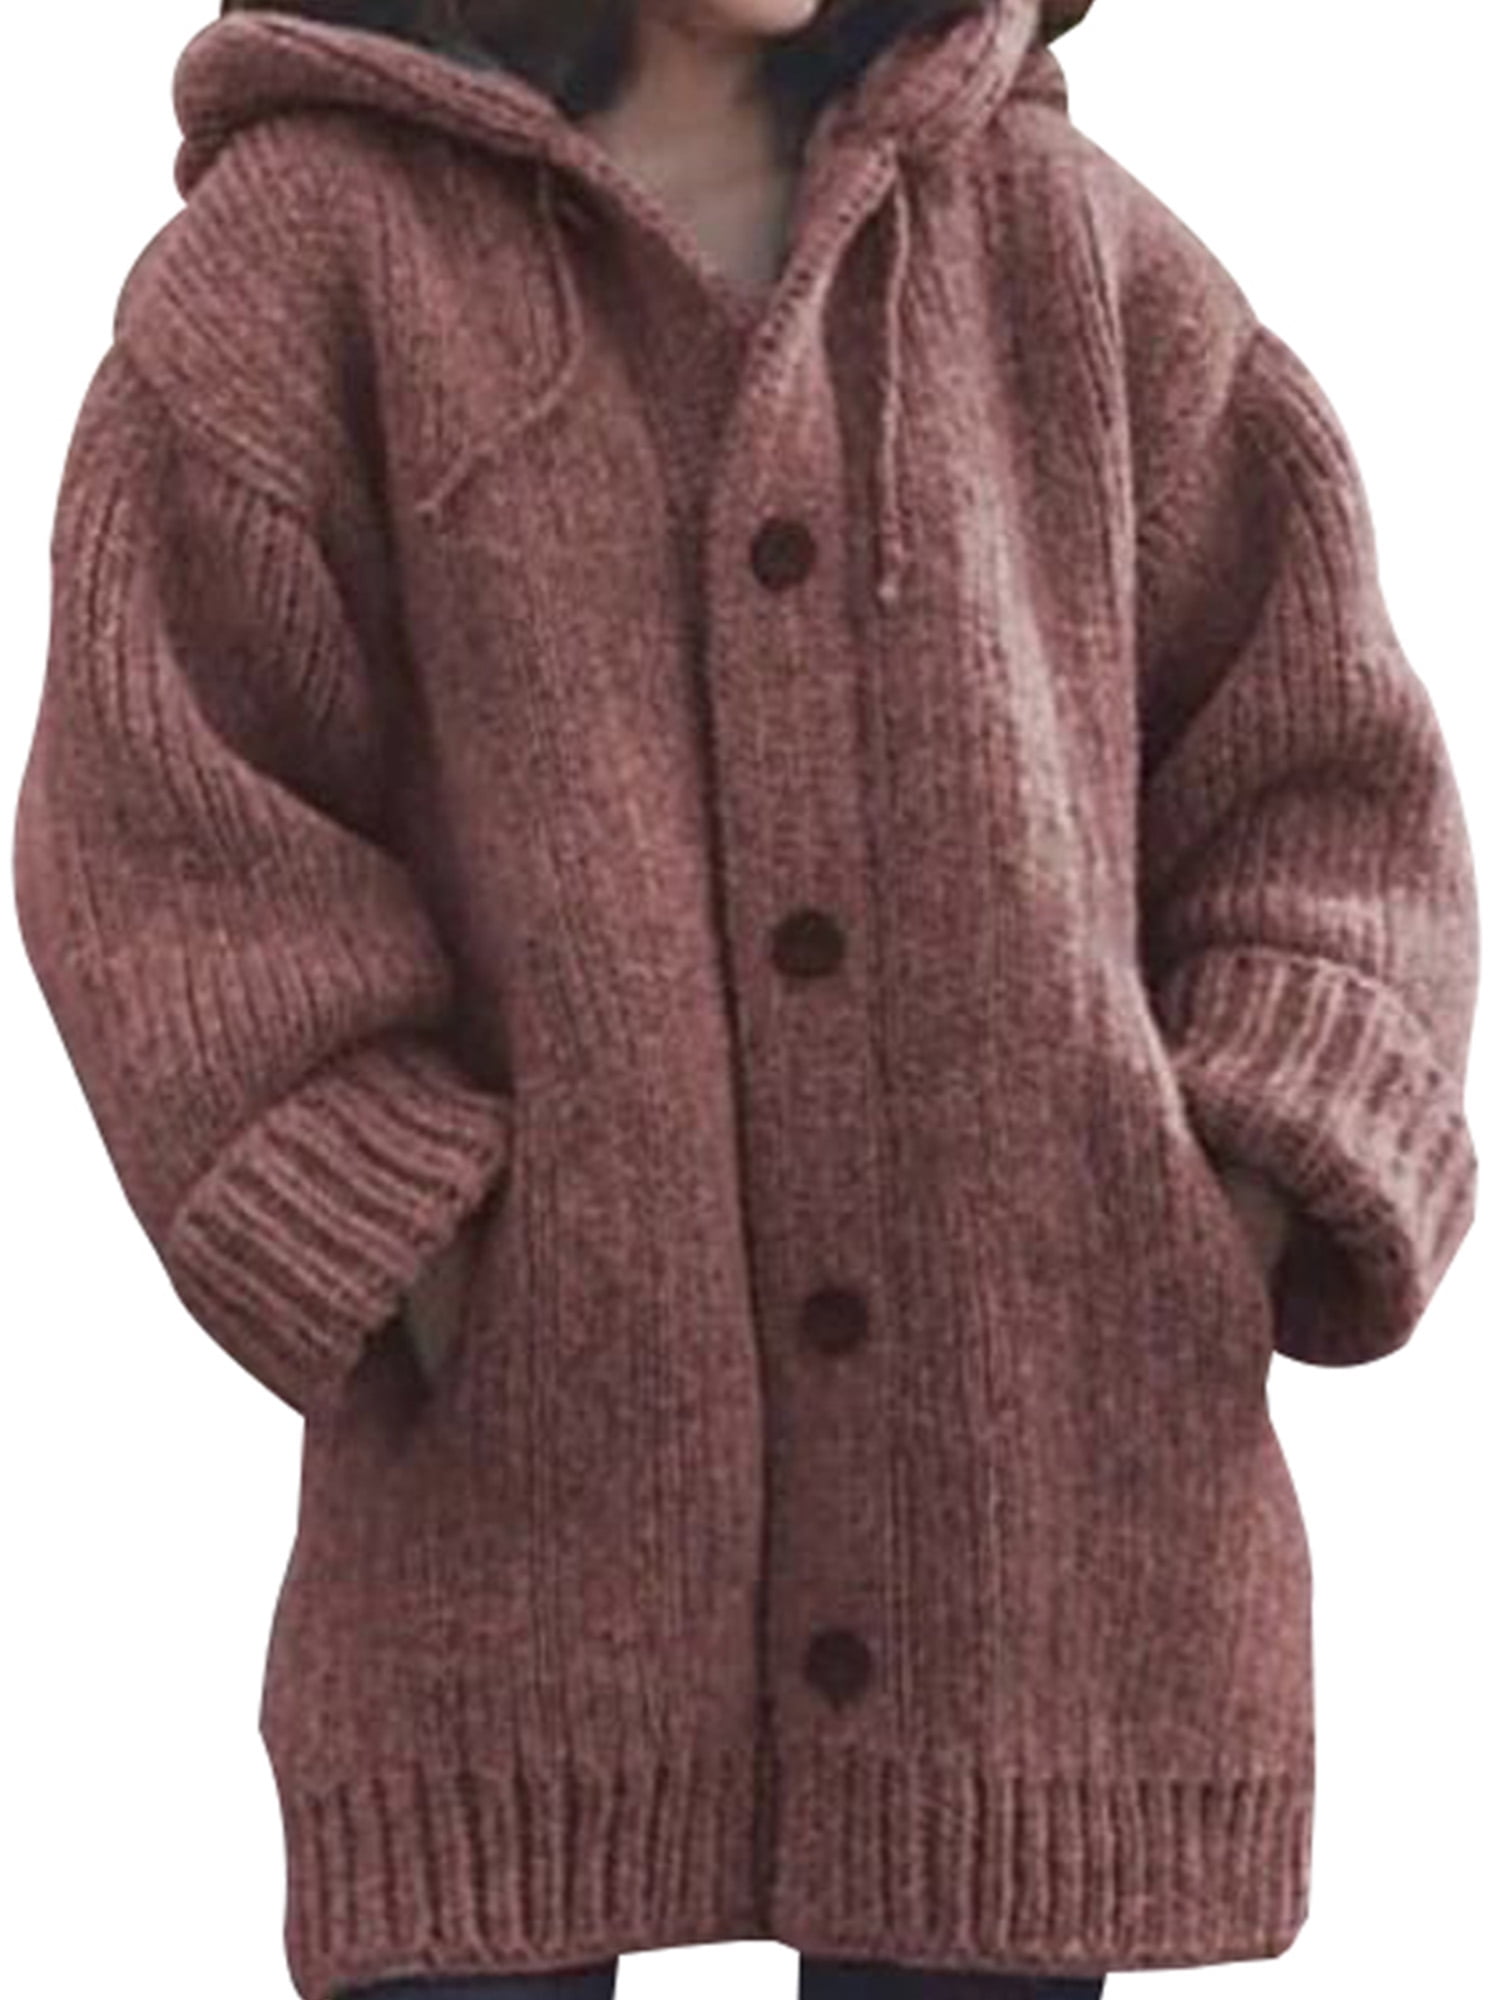 Women Long Sleeve Knitted Hooded Cardigan Jumper Jacket Winter Warm Sweater Coat